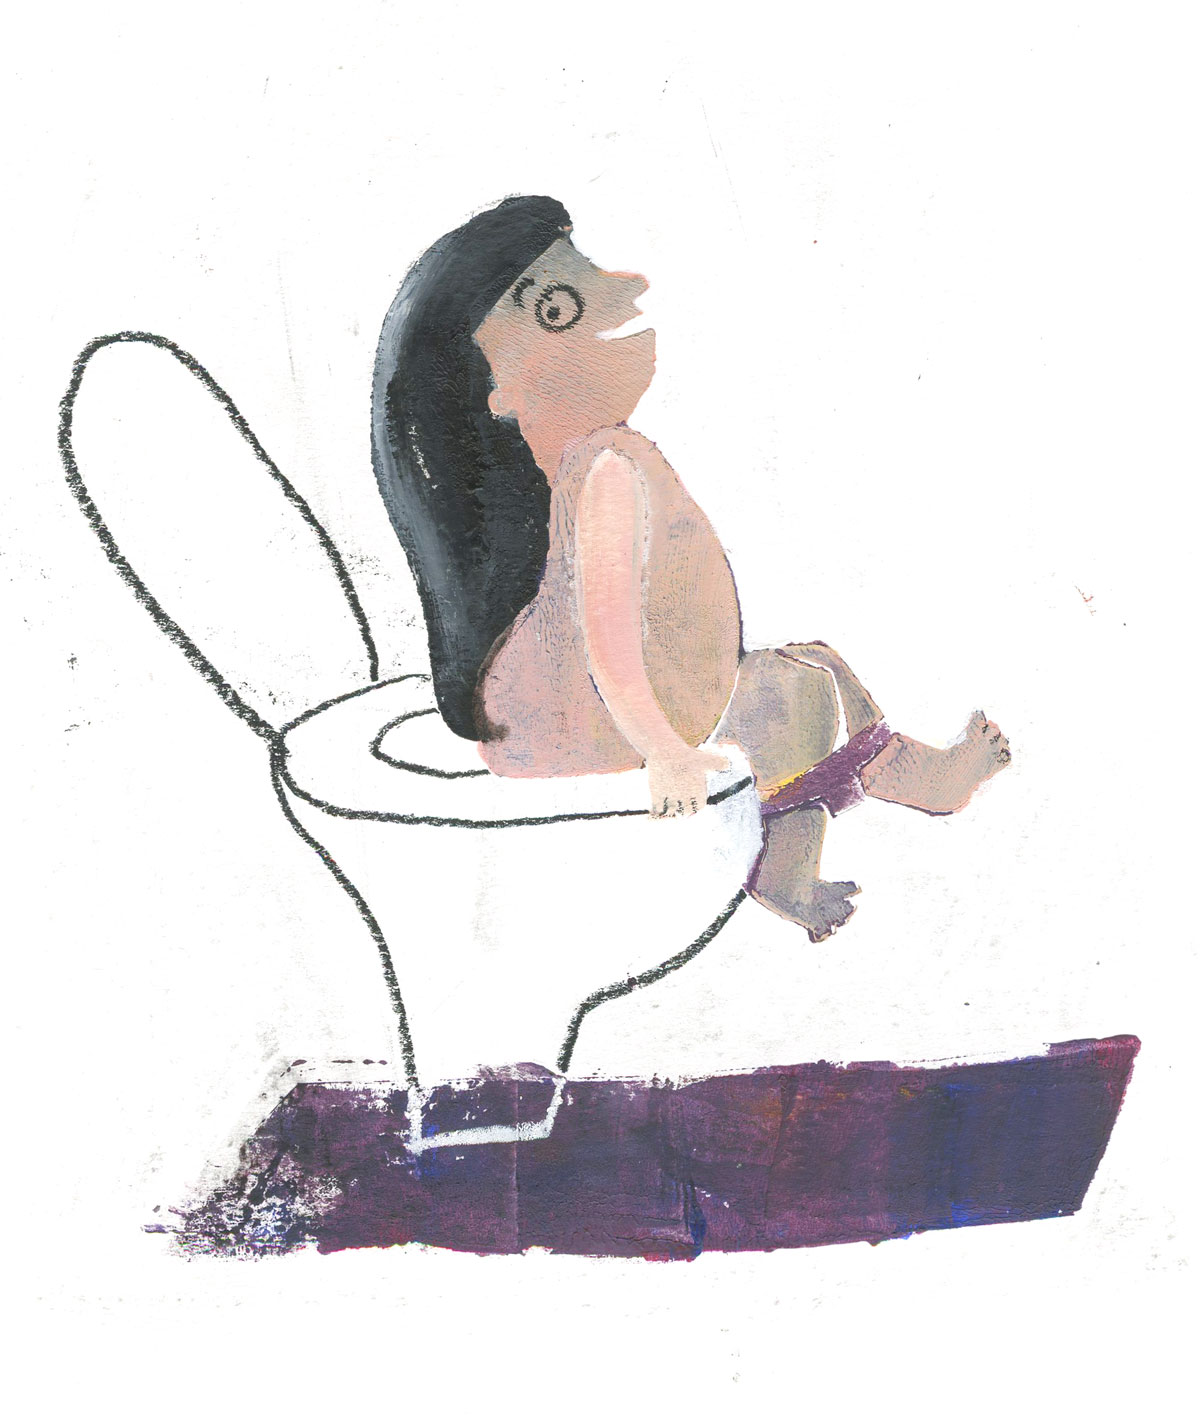 Memory of hairy bottom on toilet by Ellen Vesters Illustrator